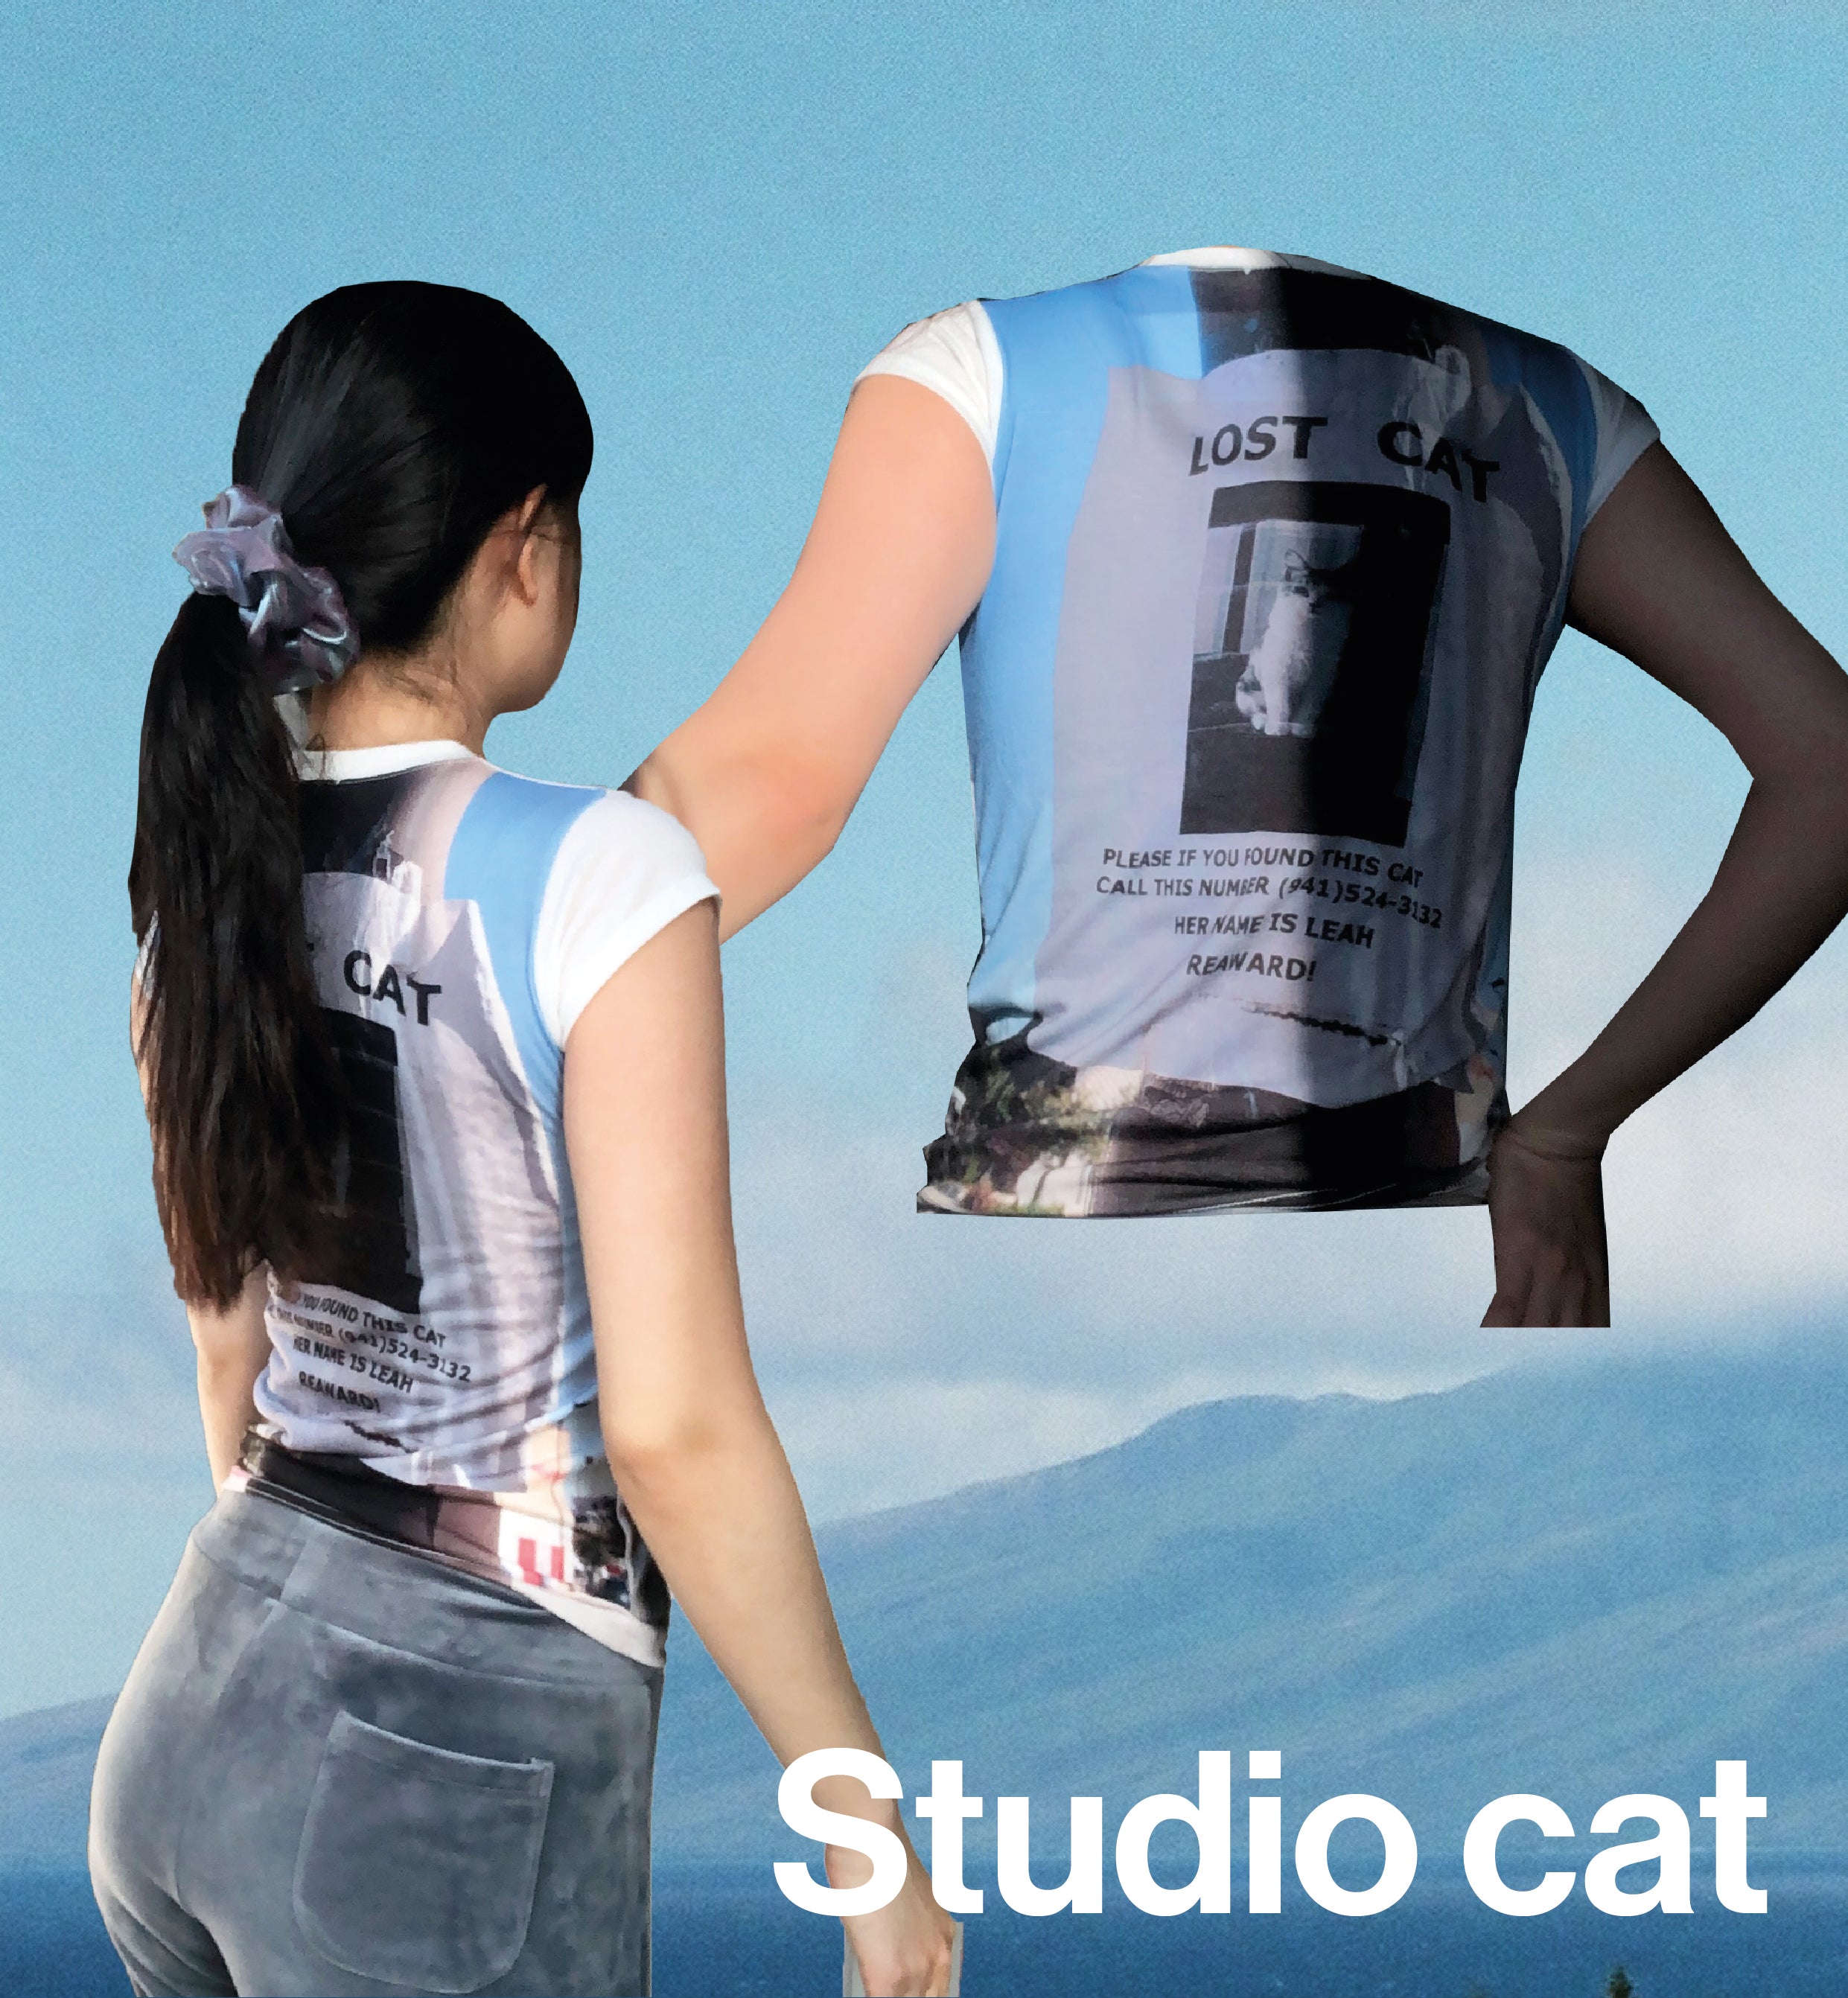 Studio cat